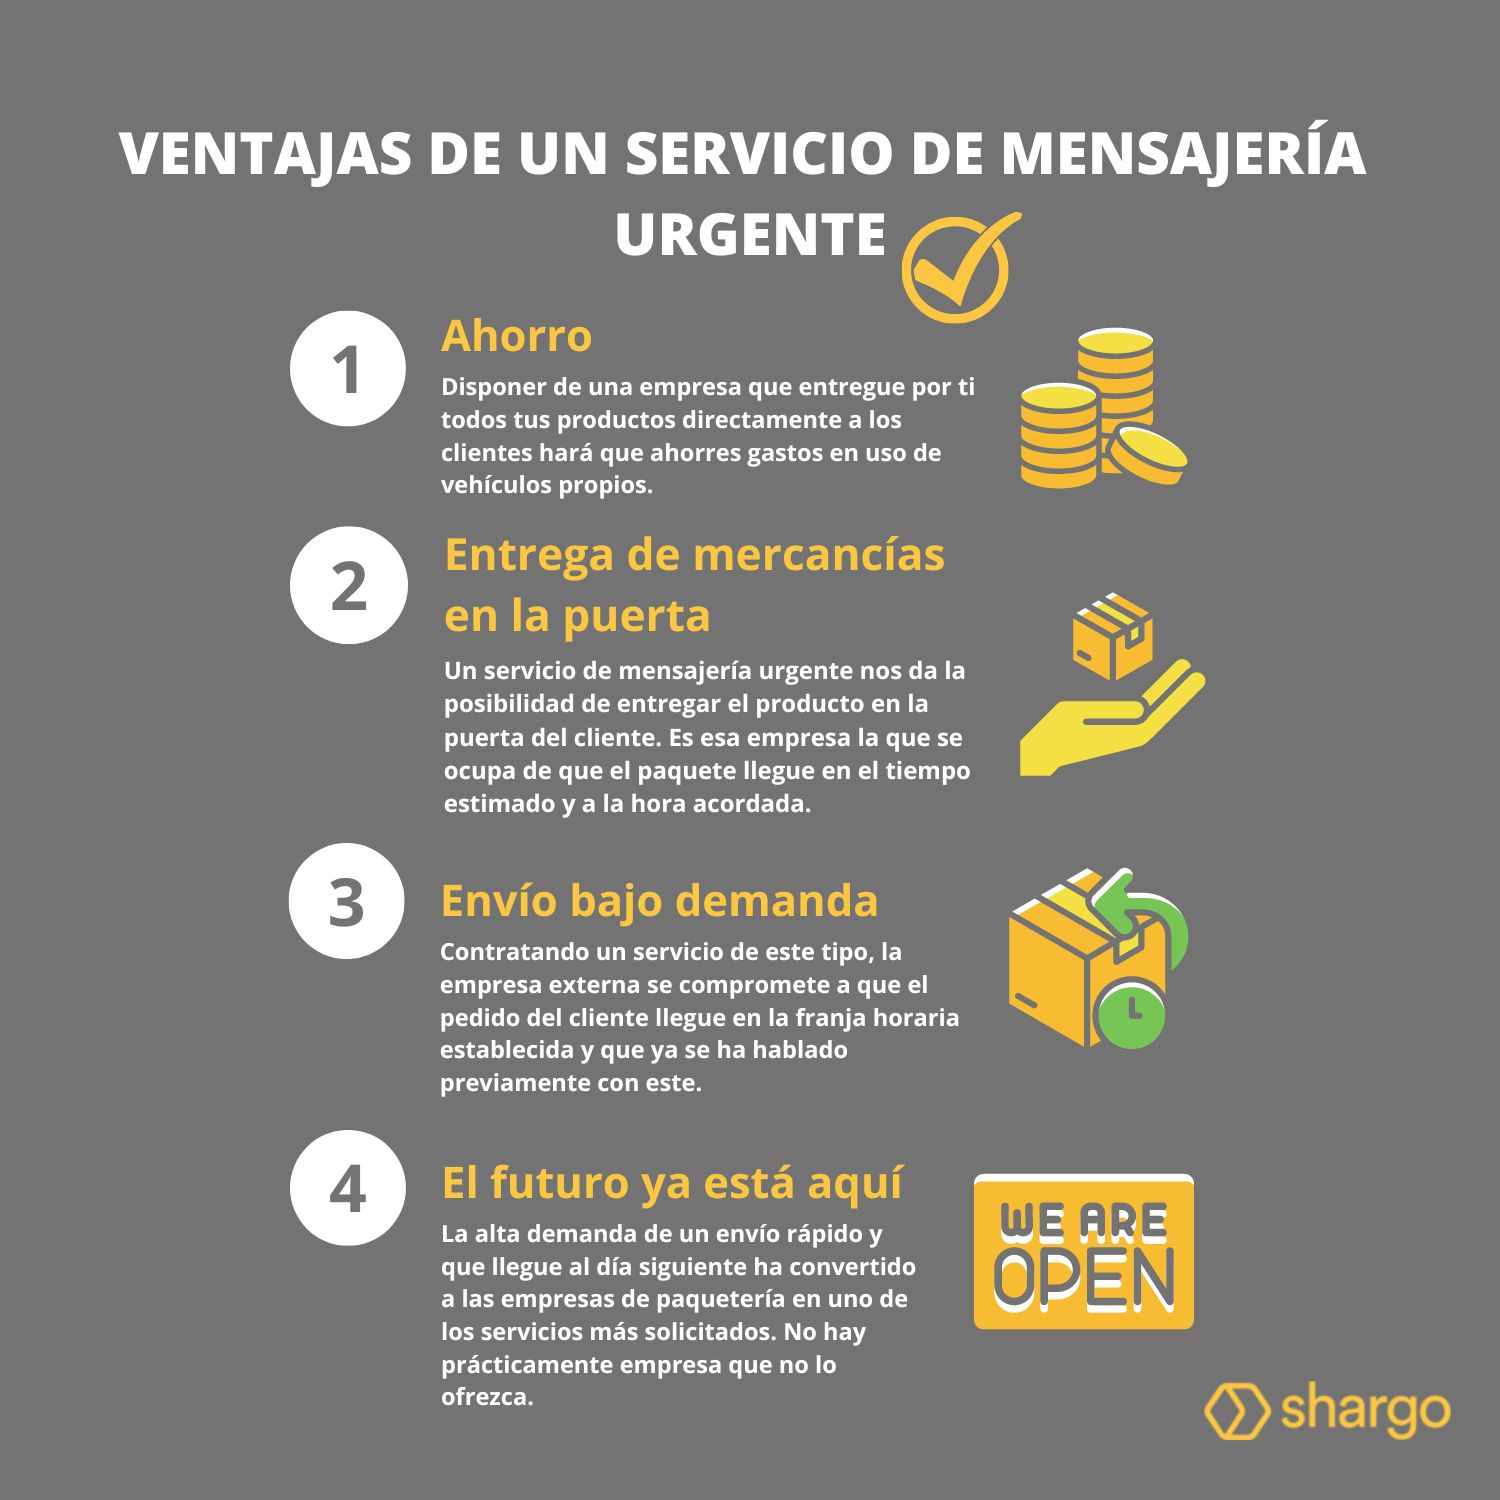 Mensajería urgente: 4 ventajas del servicio - Shargo